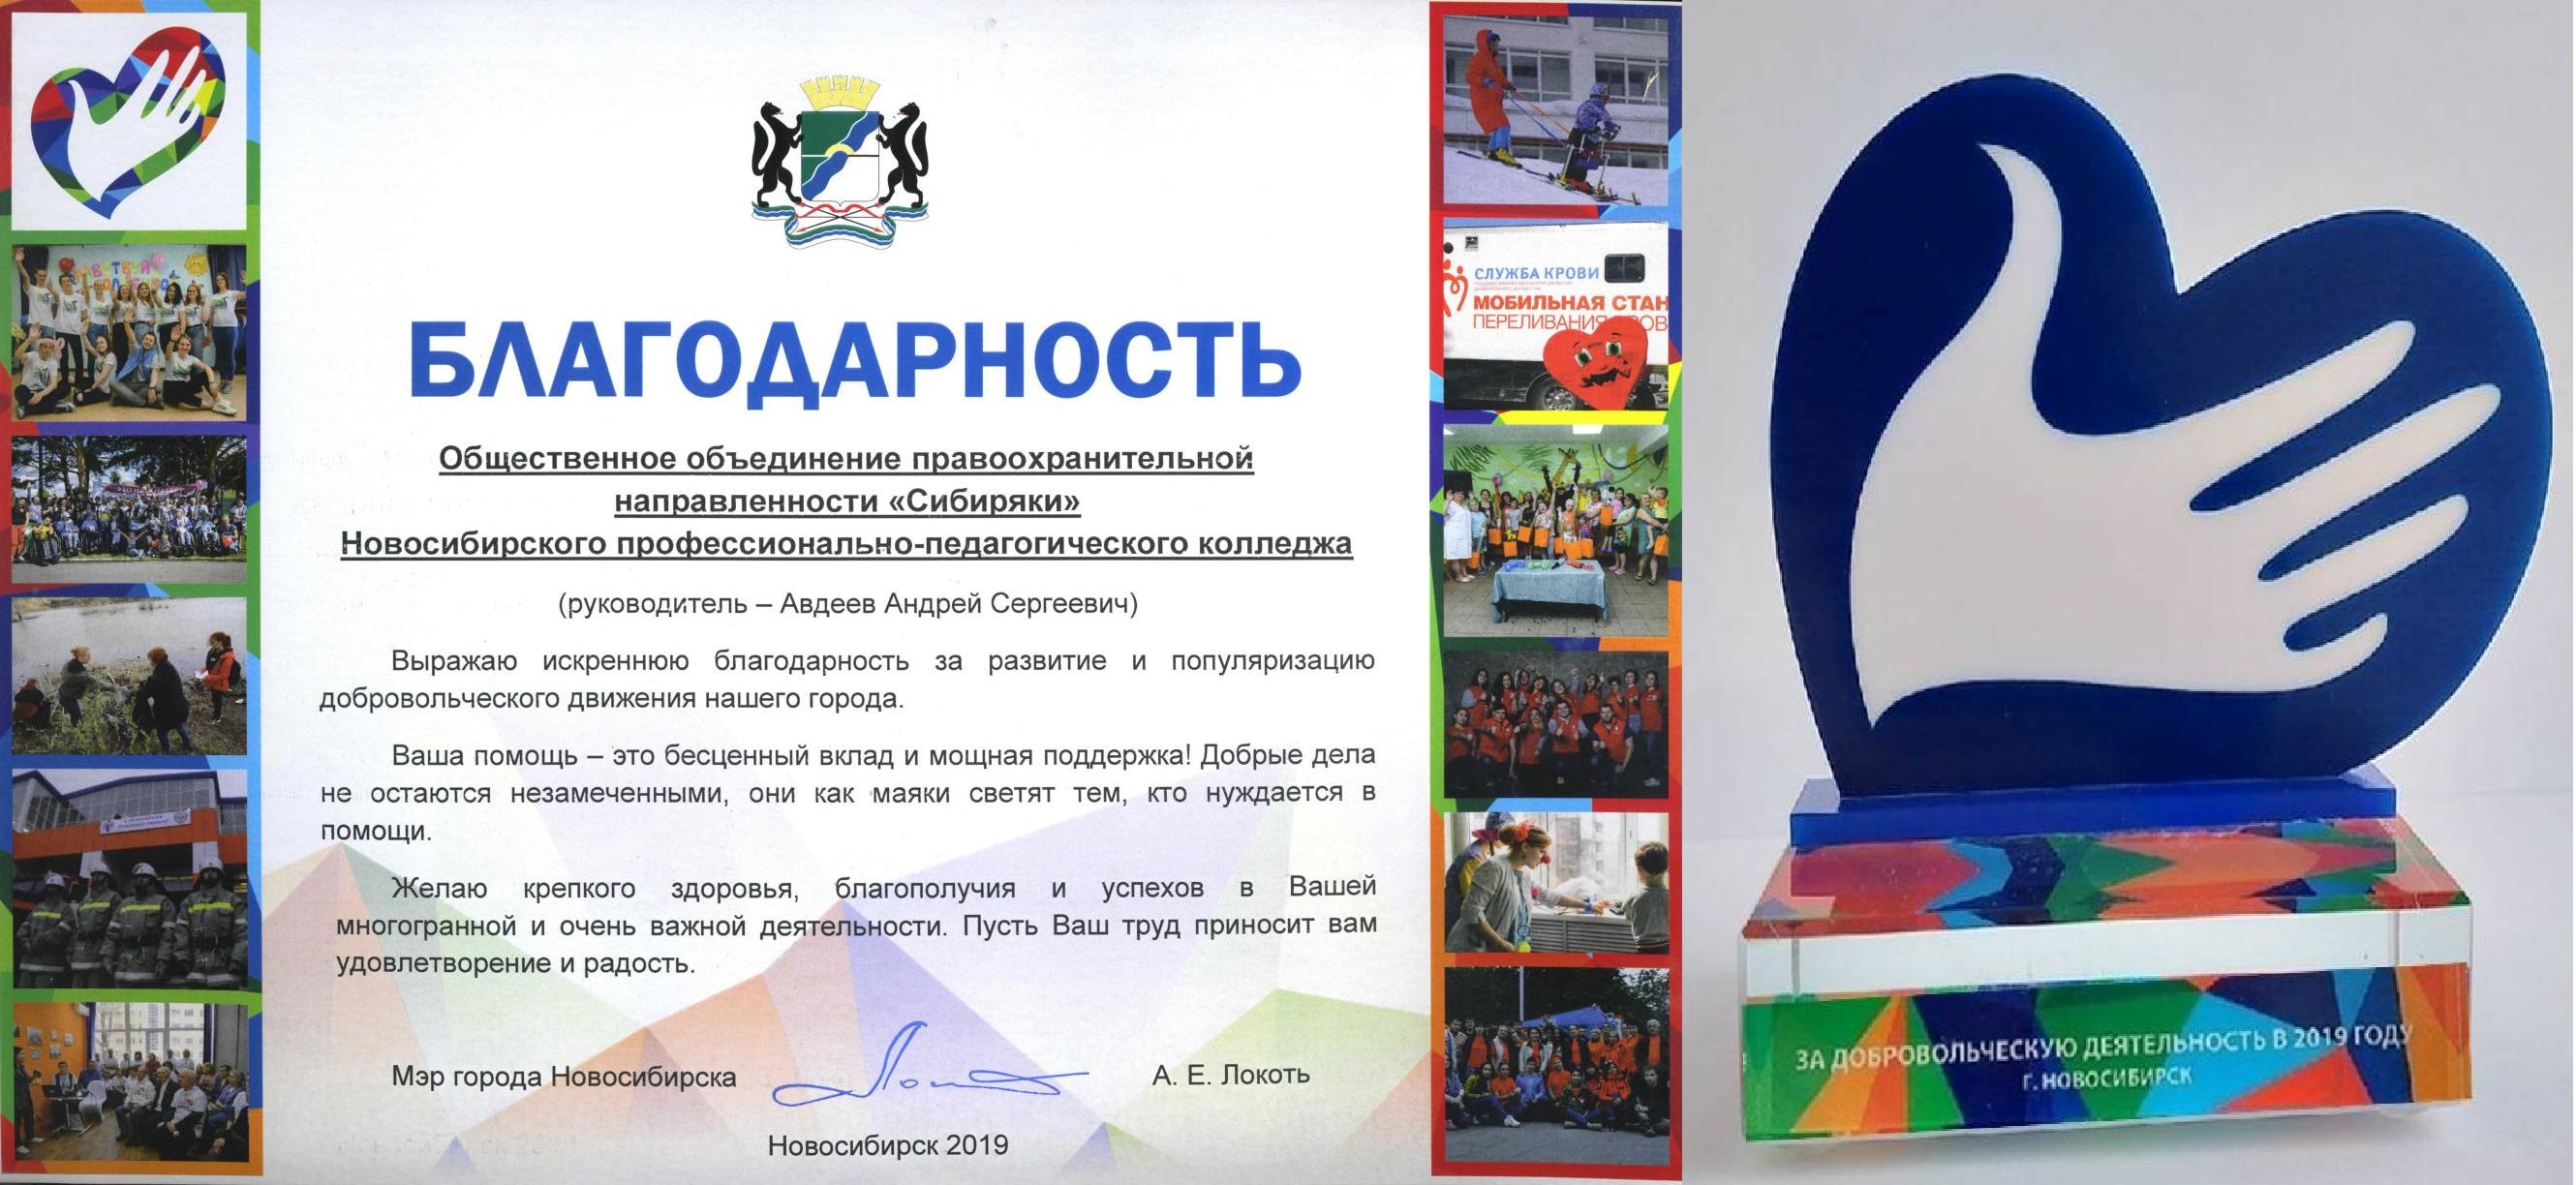 Диплом и наградной знак министерства образования Новосибирской области 